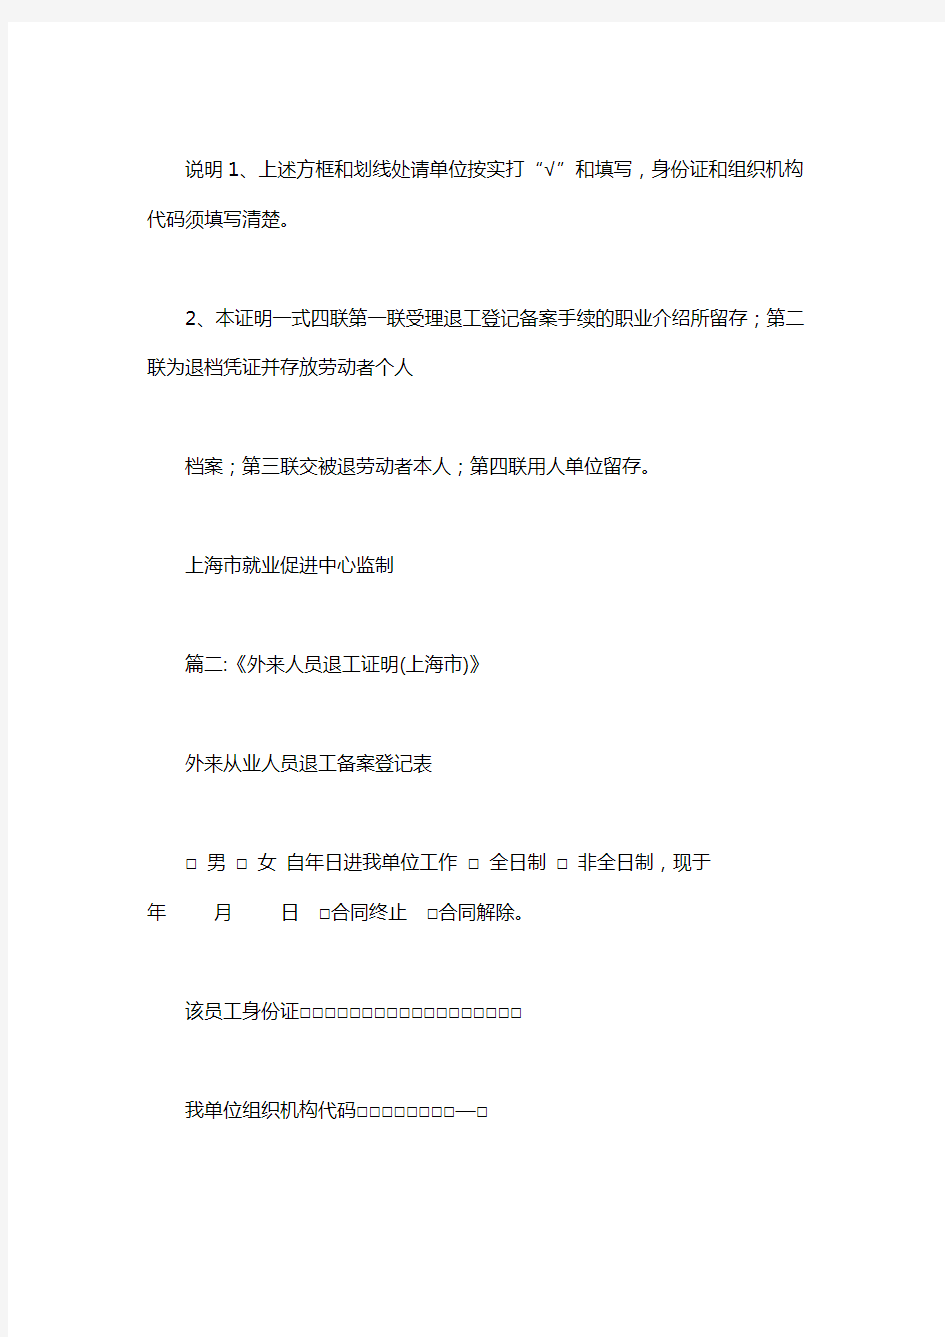 上海市退工登记表